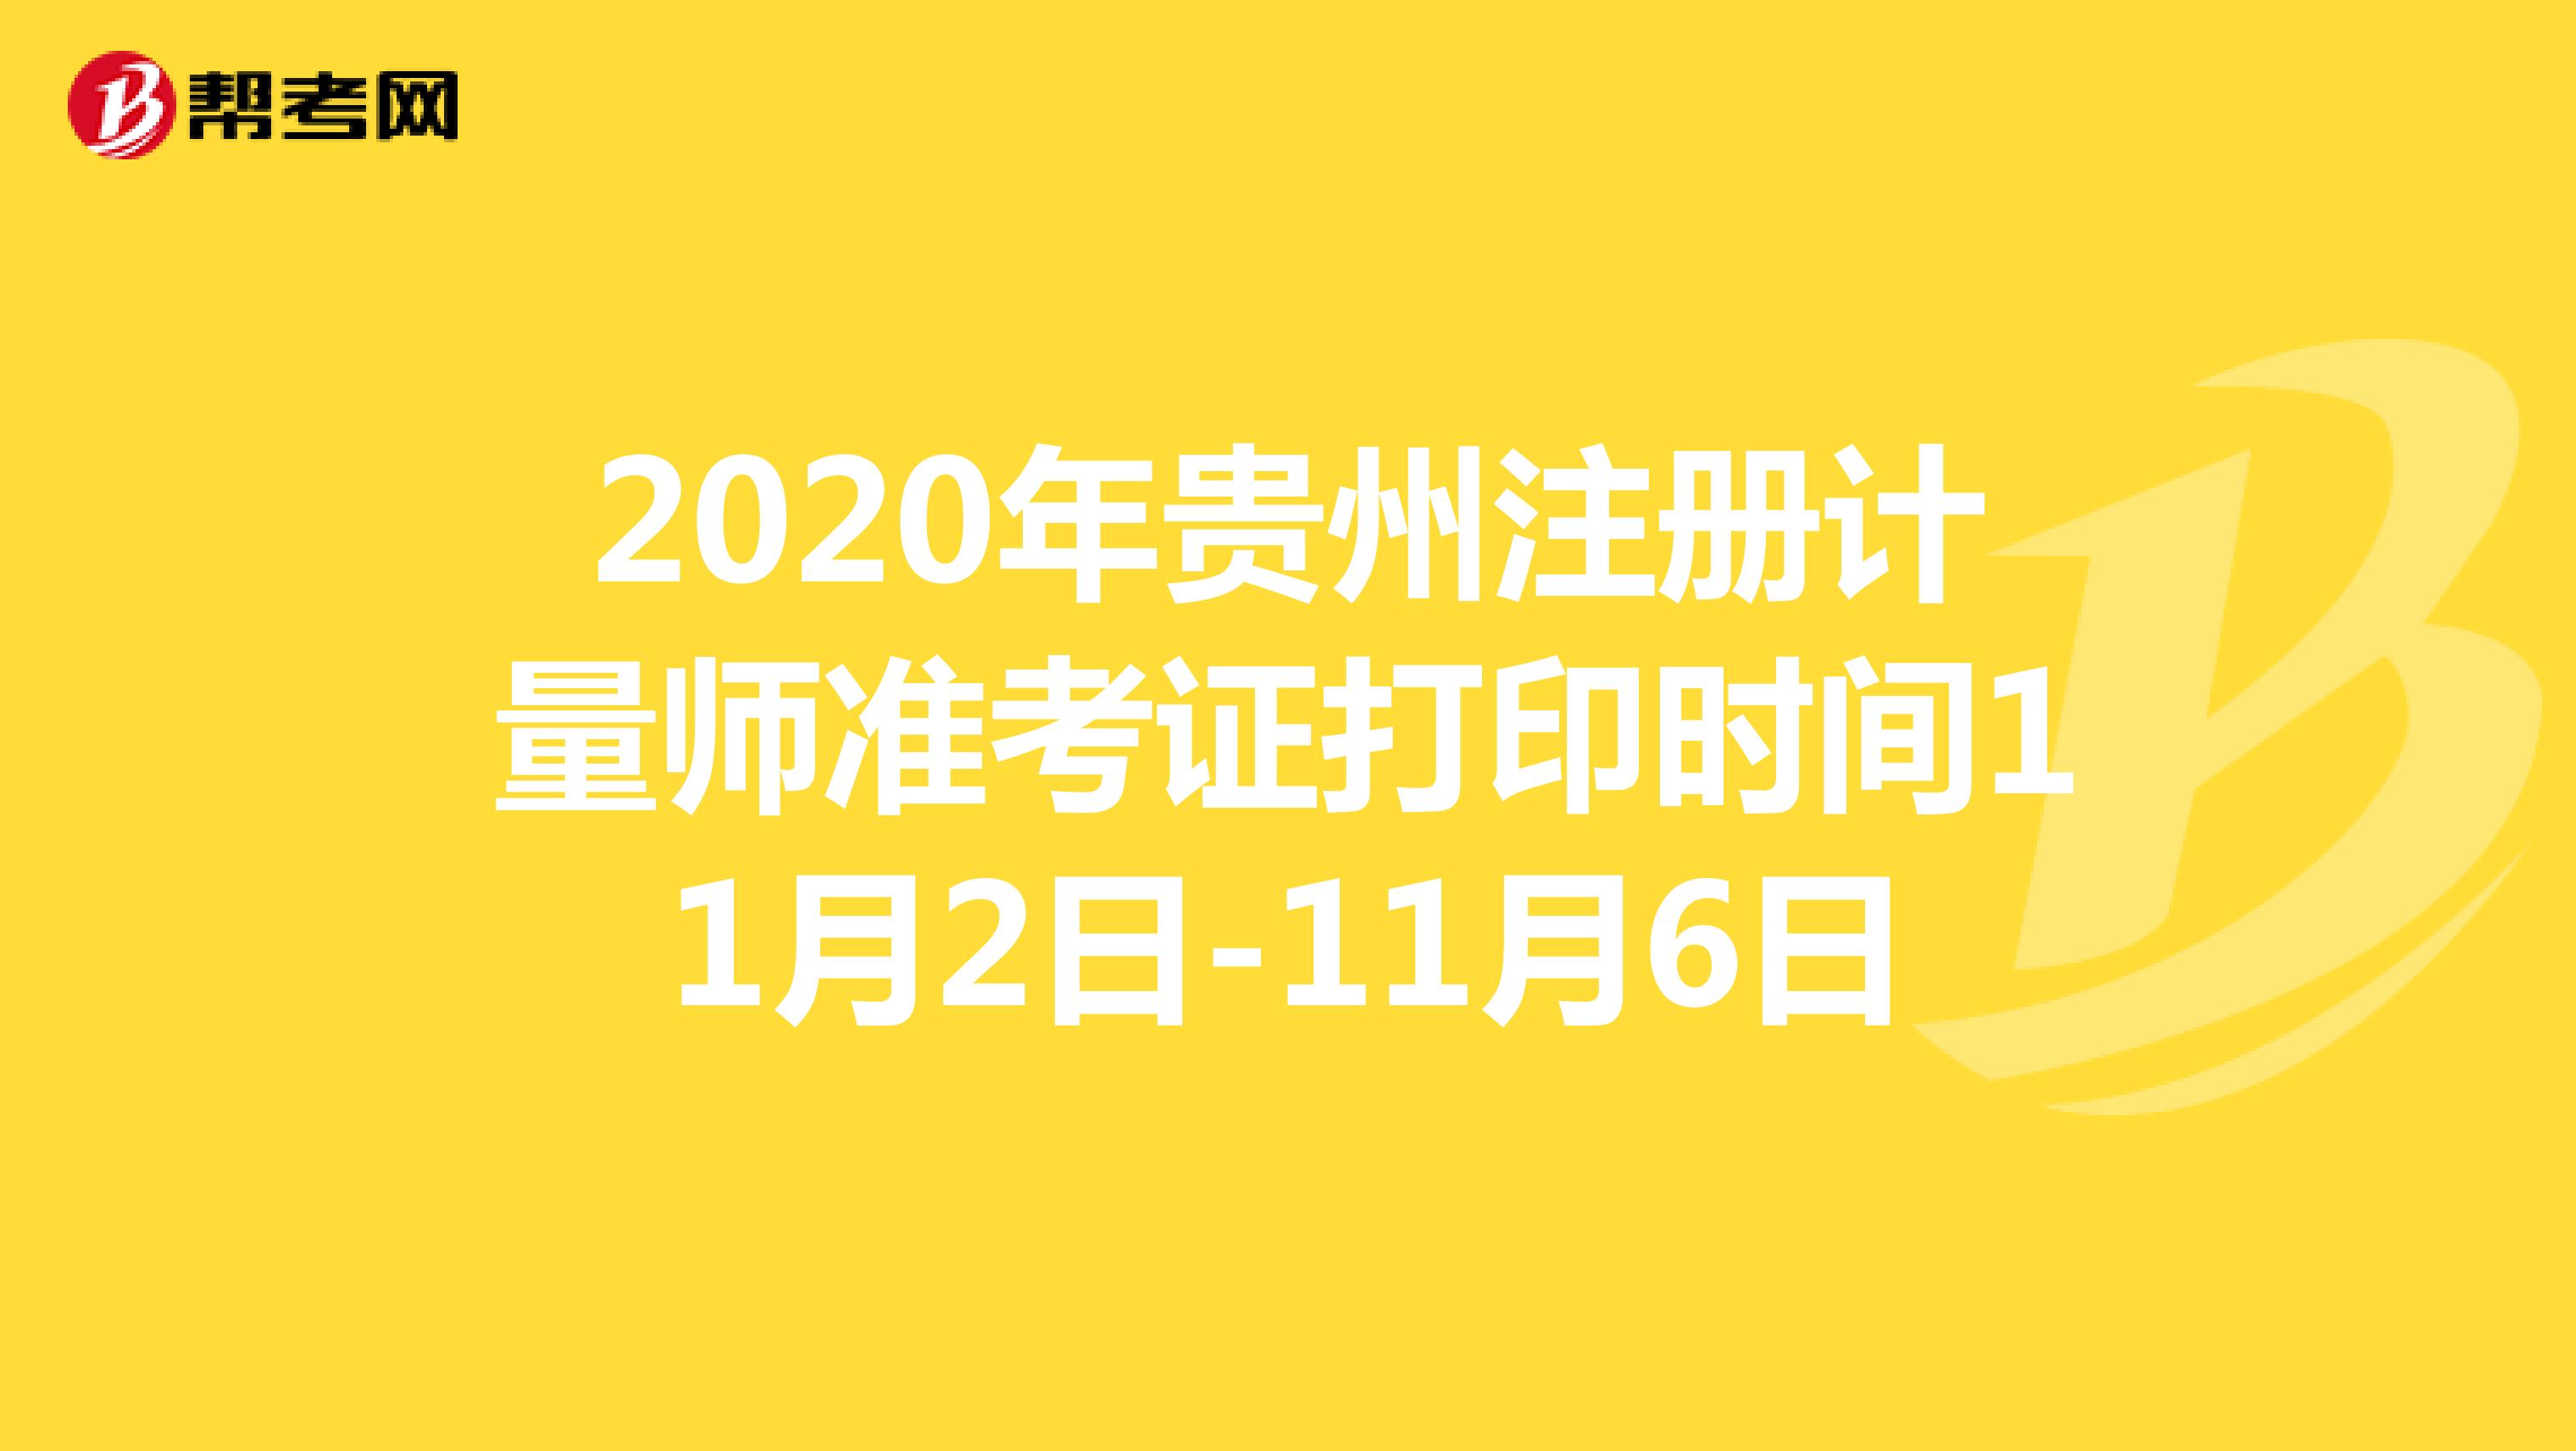 2020年贵州注册计量师准考证打印时间11月2日-11月6日